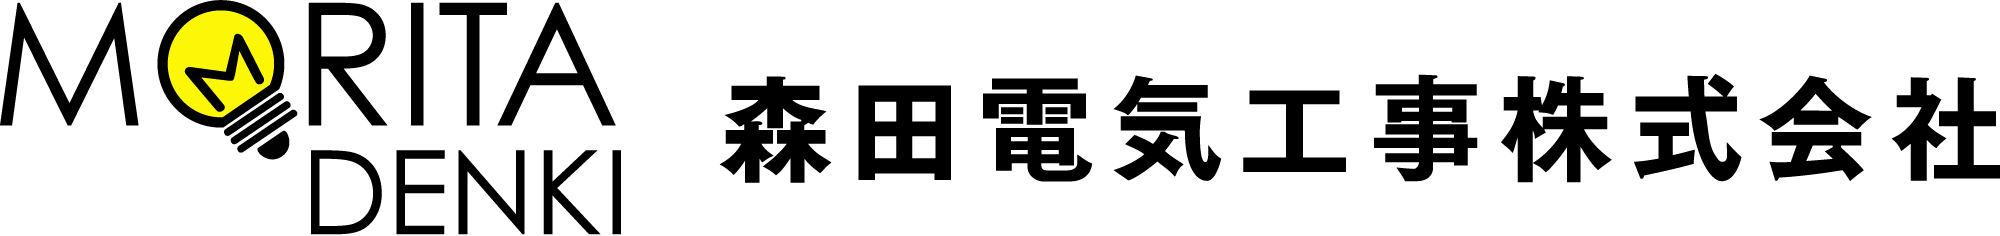 森田電気工事株式会社